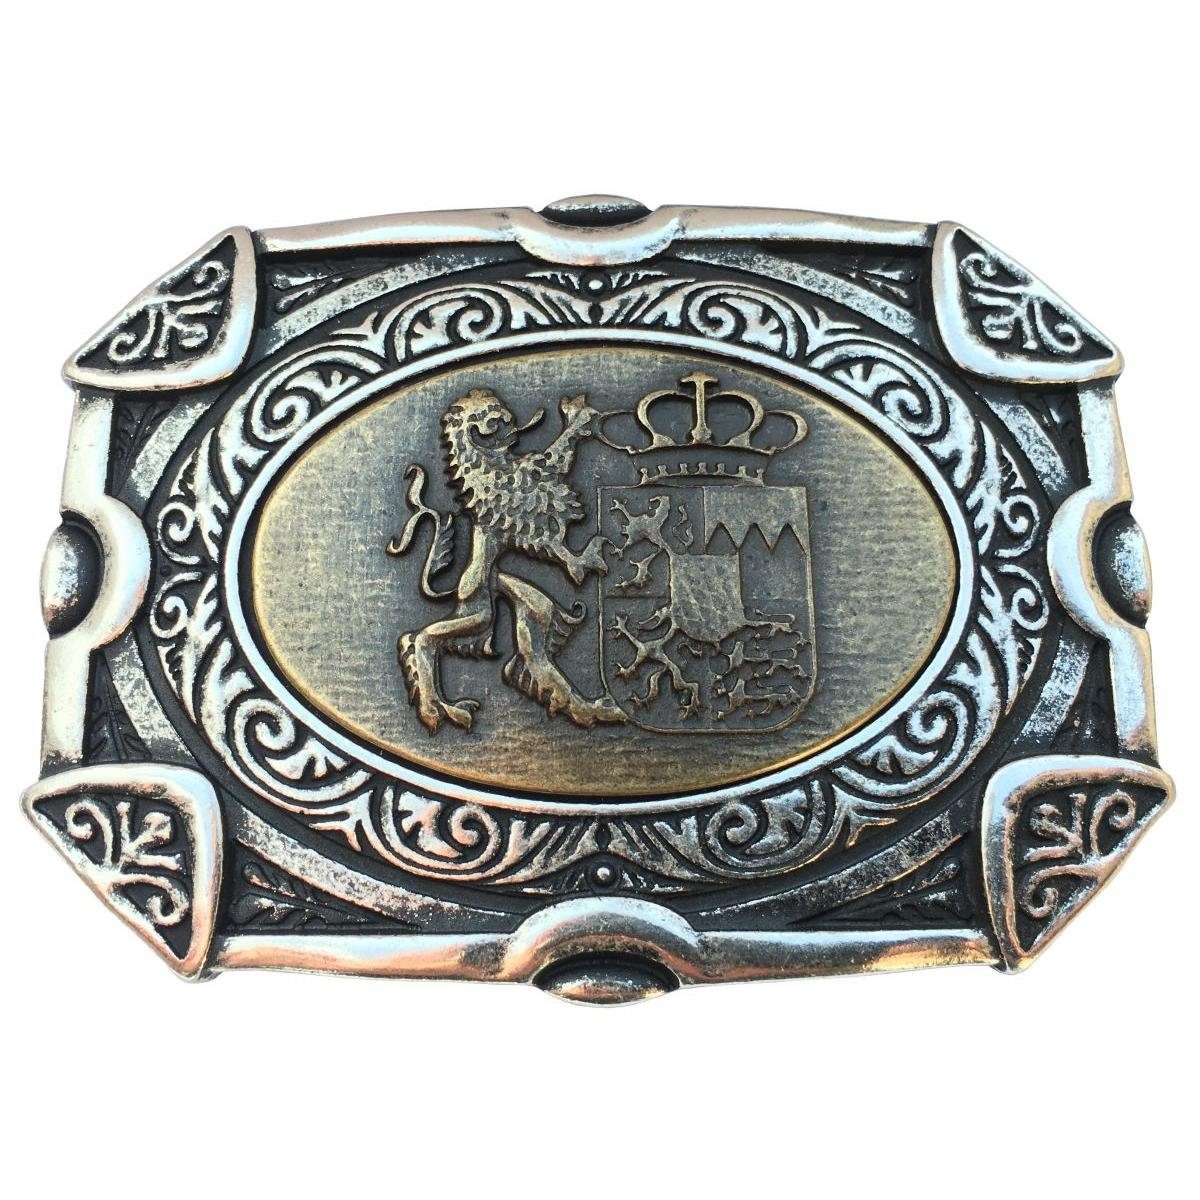 BELTINGER Gürtelschnalle Löwe mit Wappen - Buckle Wechselschließe Gürtelschließe 40mm - Für die